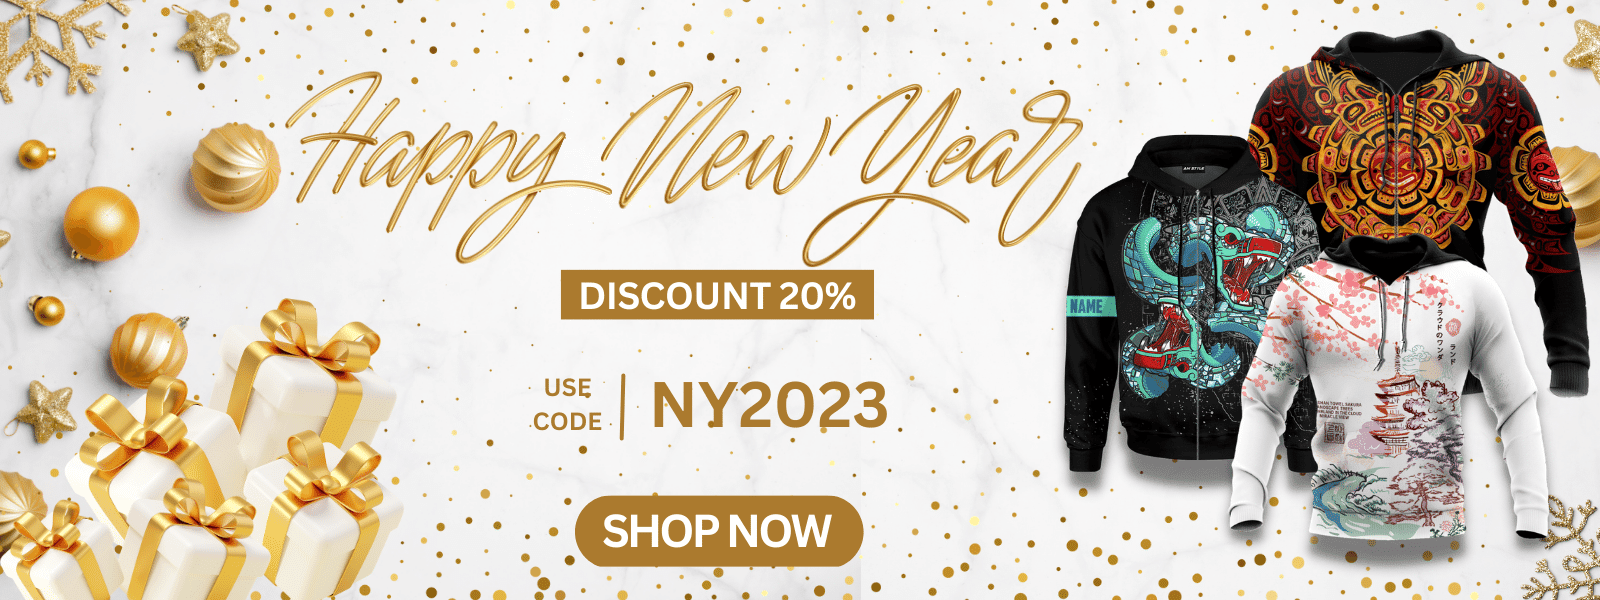 amazestyle-banner-new-year-sale